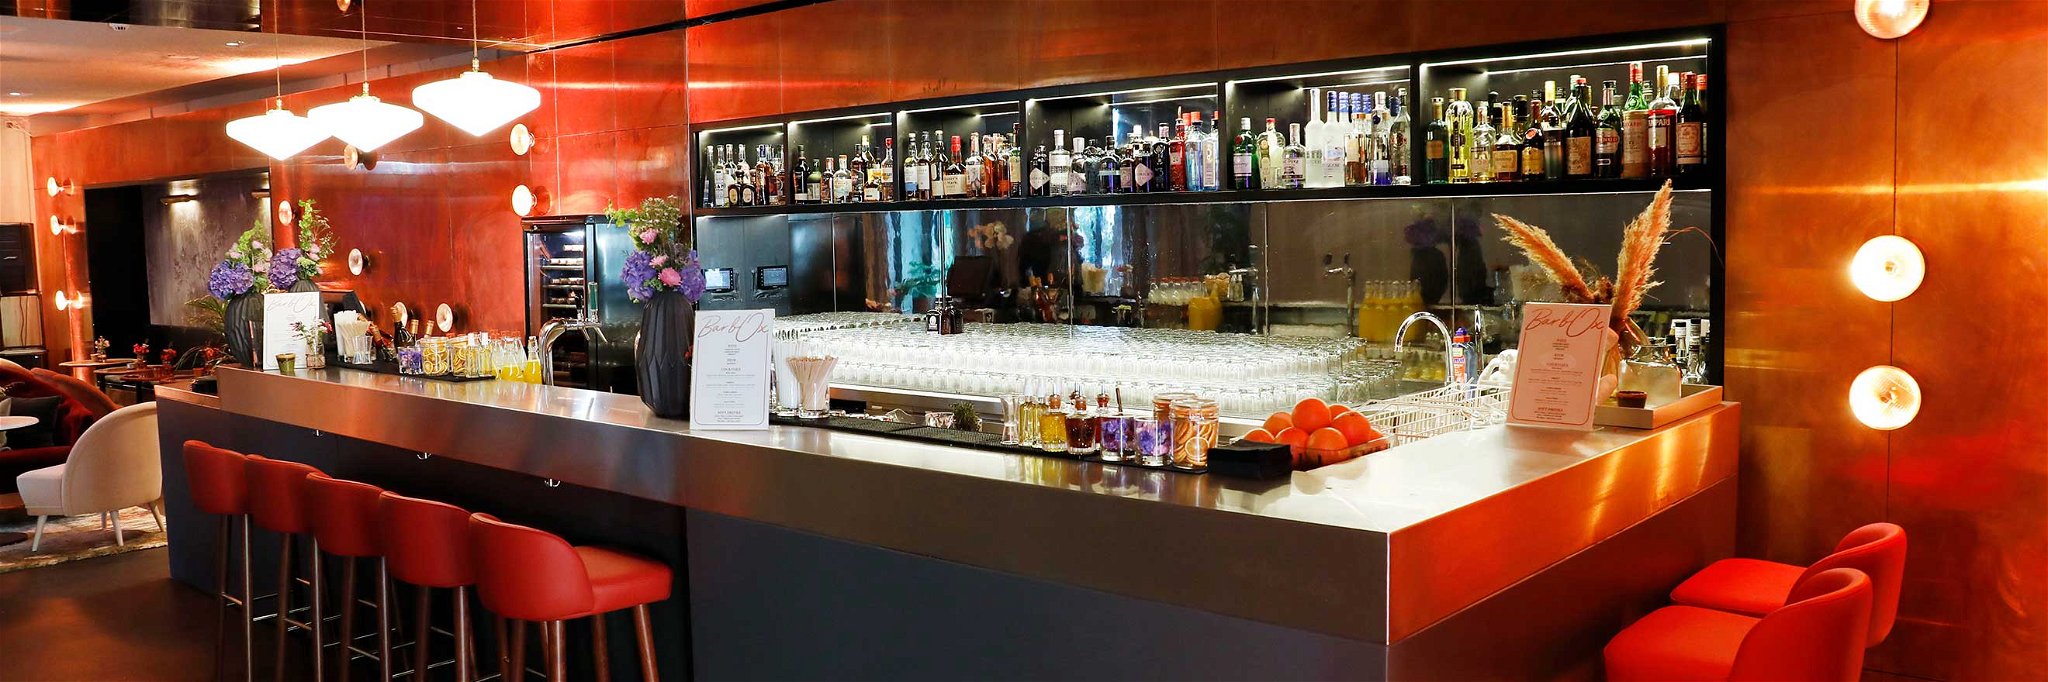 Die neue Bar soll »Hangout Hotspot für Berliner und Gäste der Stadt« werden.